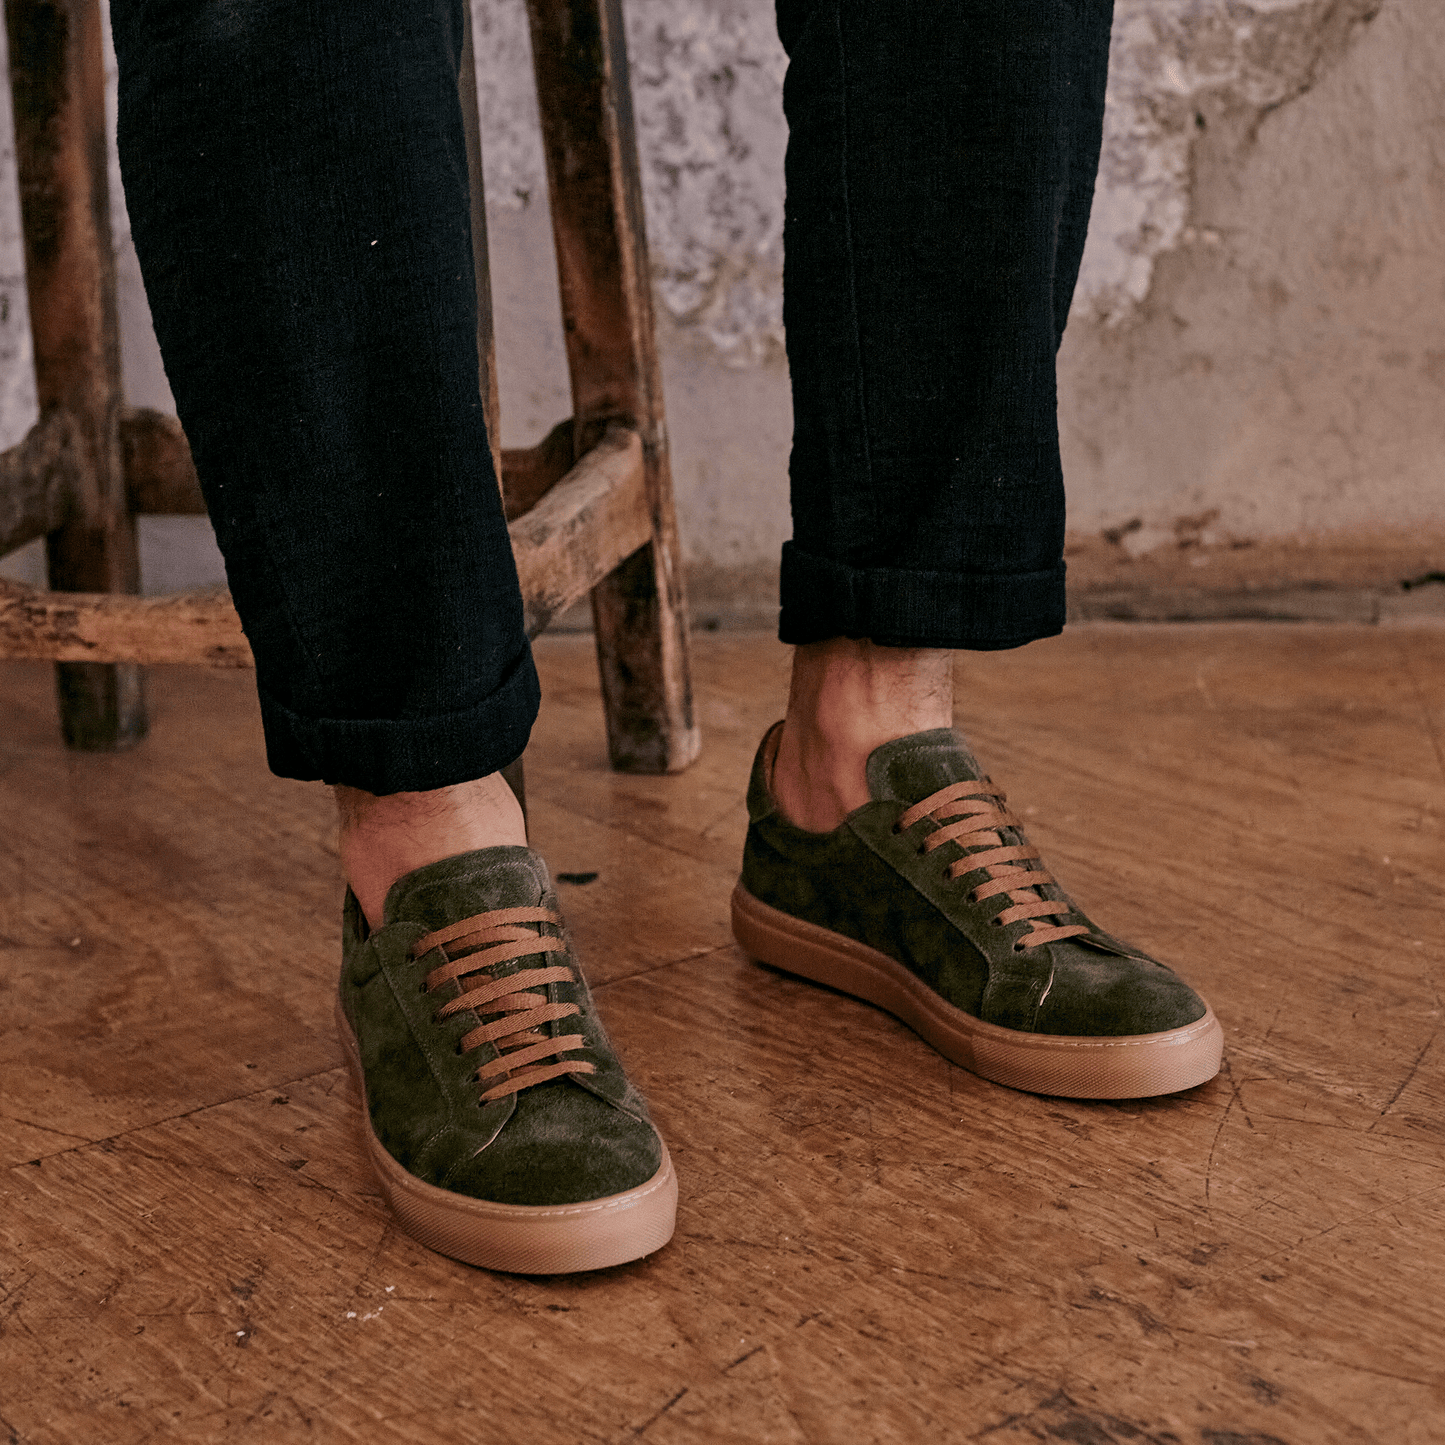 
                  
                    ANCOATS // KHAKI SUEDE-MEN'S SNEAKER | LANX Proper Men's Shoes
                  
                